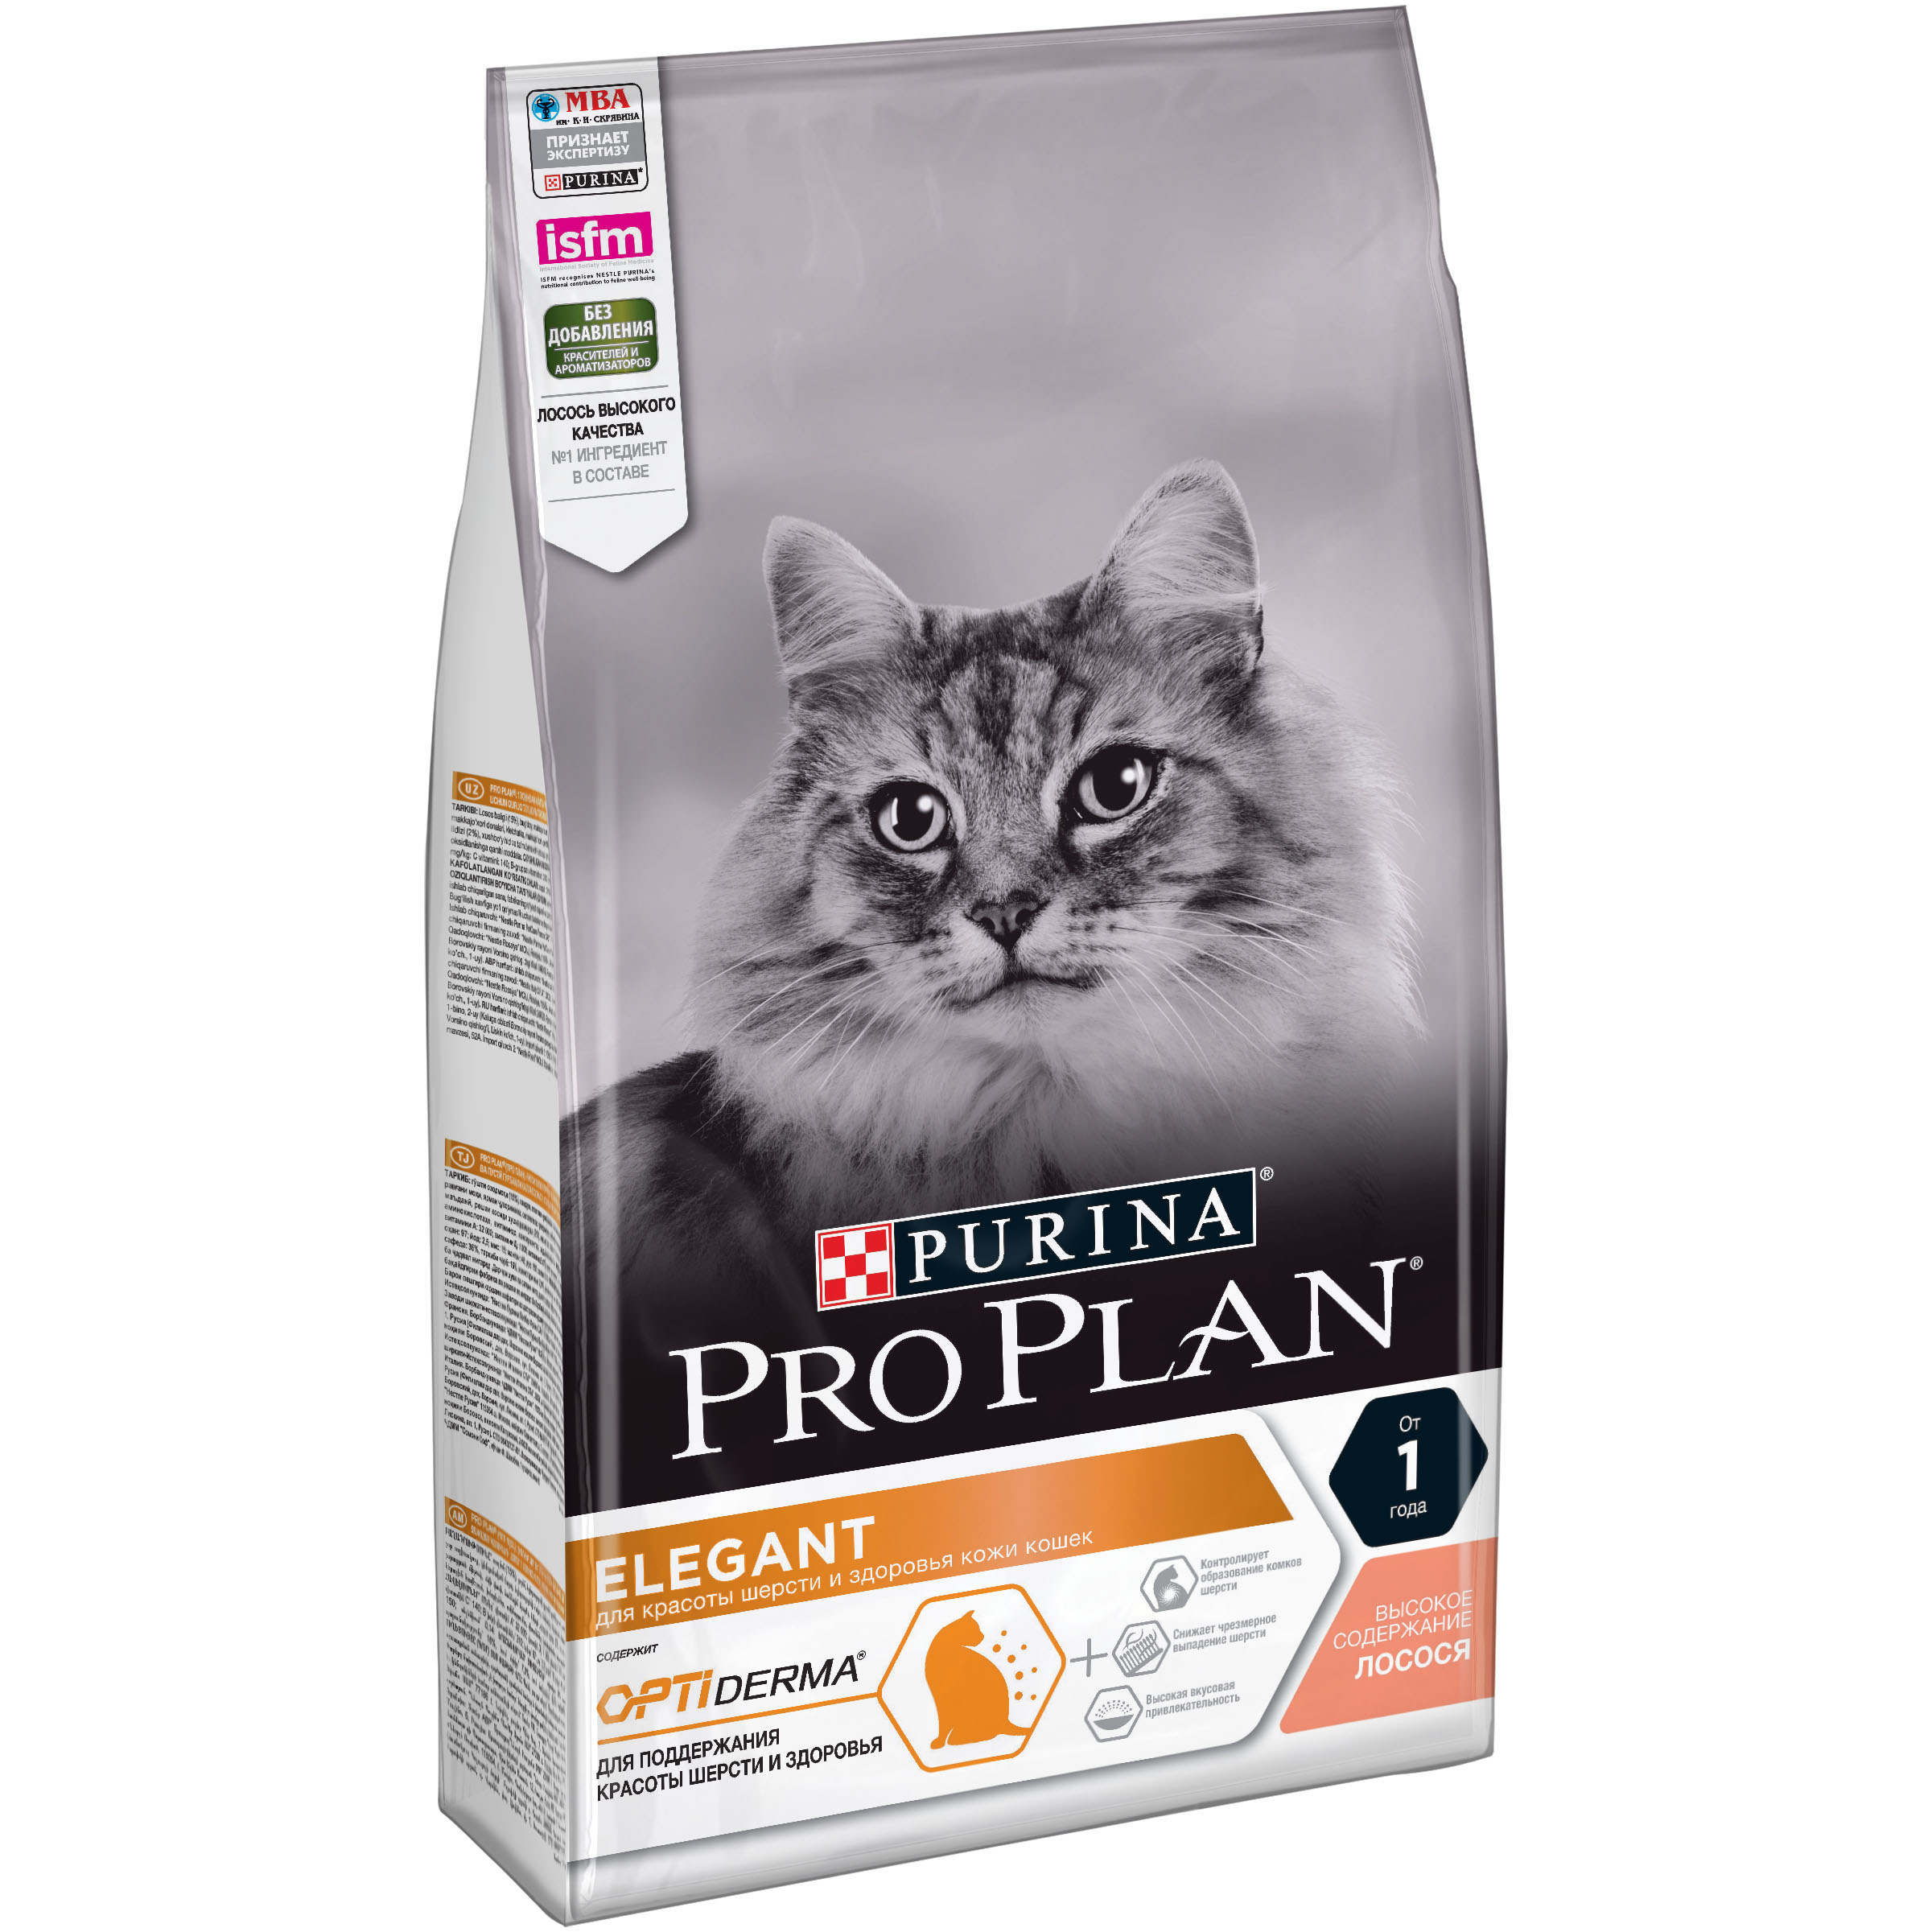 Сухой корм на zoomaugli.ru Pro Plan Optiderma Elegant для кошек с чувствительной кожей 1,5 кг